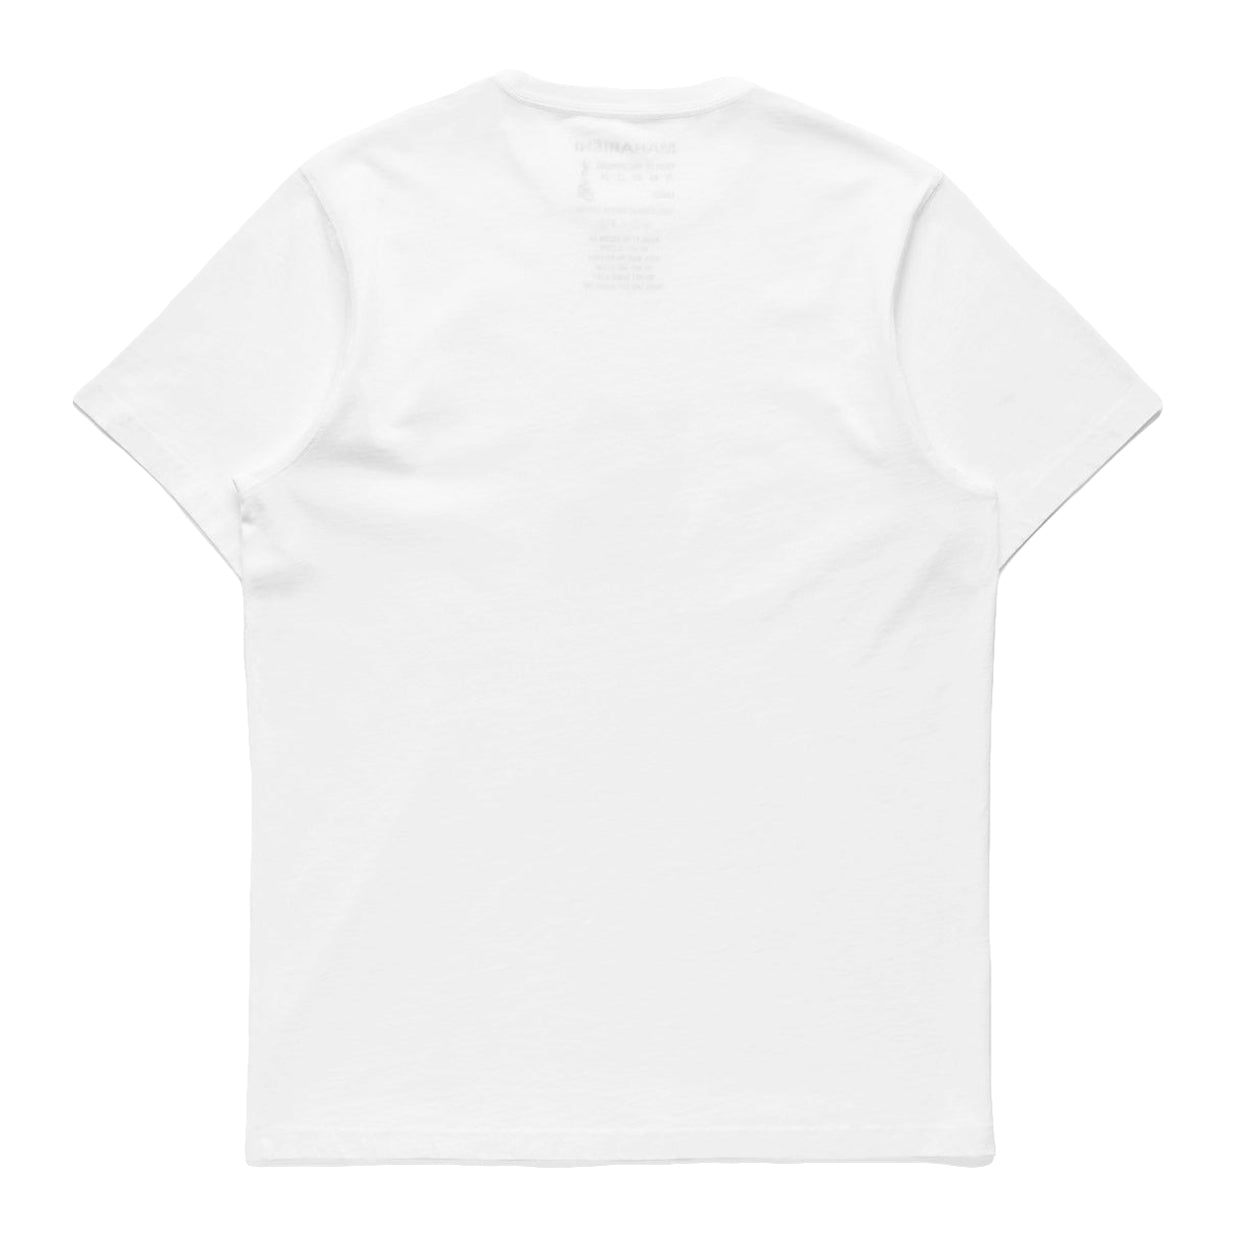 Maharishi Men Double Tigers Miltype T - Shirt White - T - SHIRTS Canada